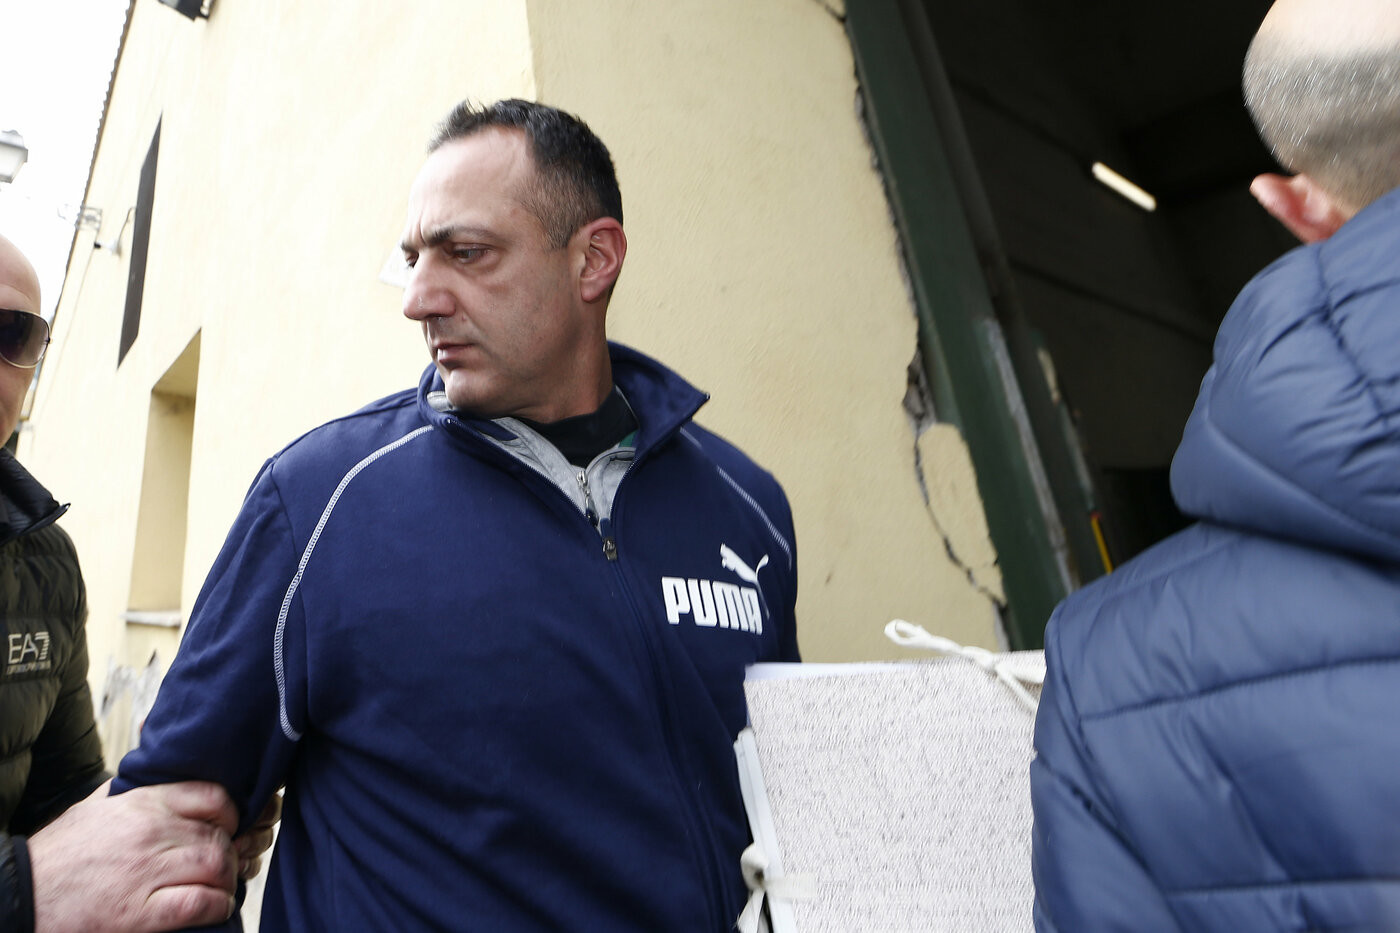 Corruzione, arrestato Marcello De Vito. L’intercettazione: “Distribuiamoci i soldi”. Di Maio: “Fuori dal M5S”